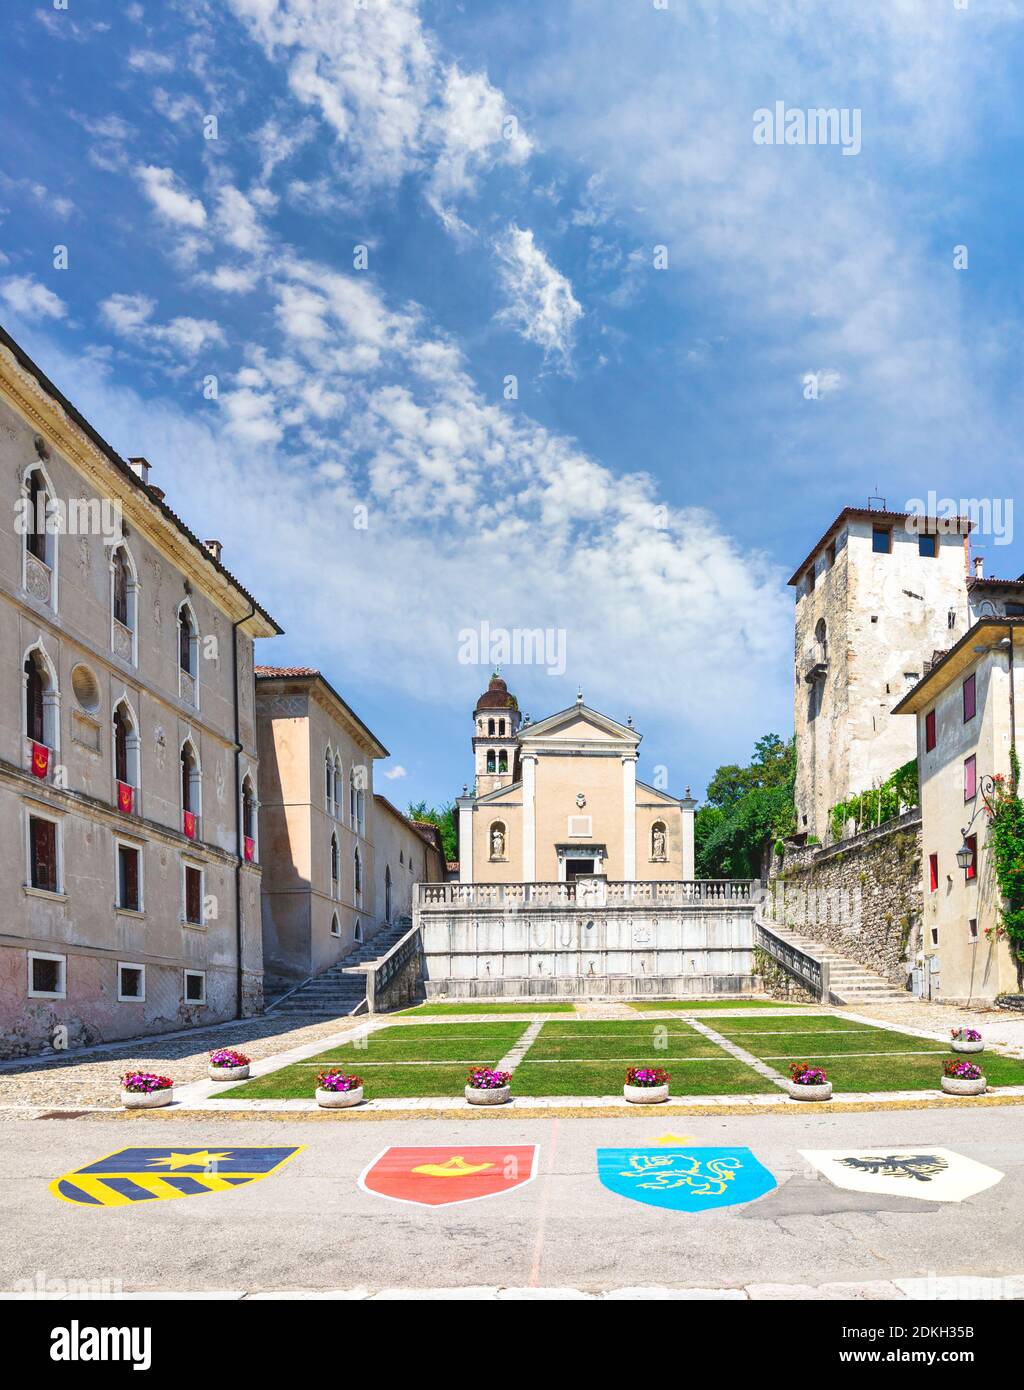 Italien, Venetien, Belluno, Dolomiten, das historische Zentrum von Feltre mit den vier Wappen der Bezirke des palio, die Kirche St. Rochus und das Schloss von Alboin Stockfoto